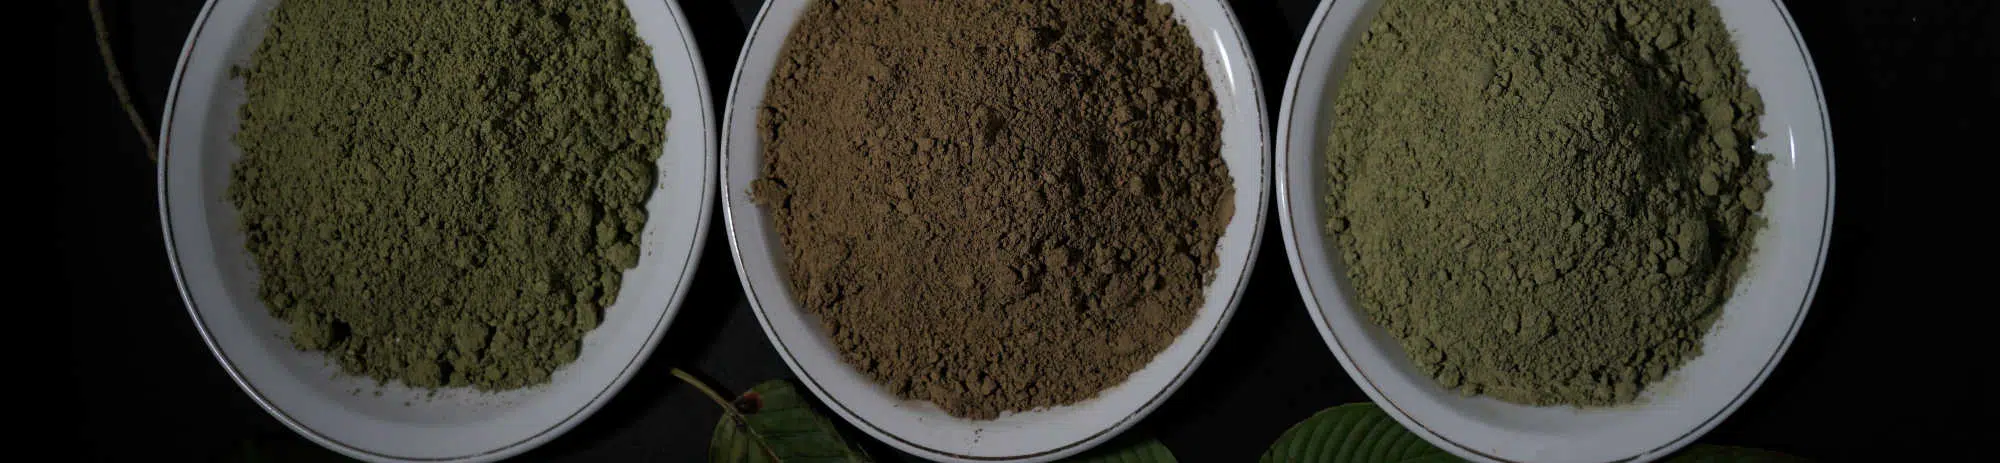 image of kratom powders